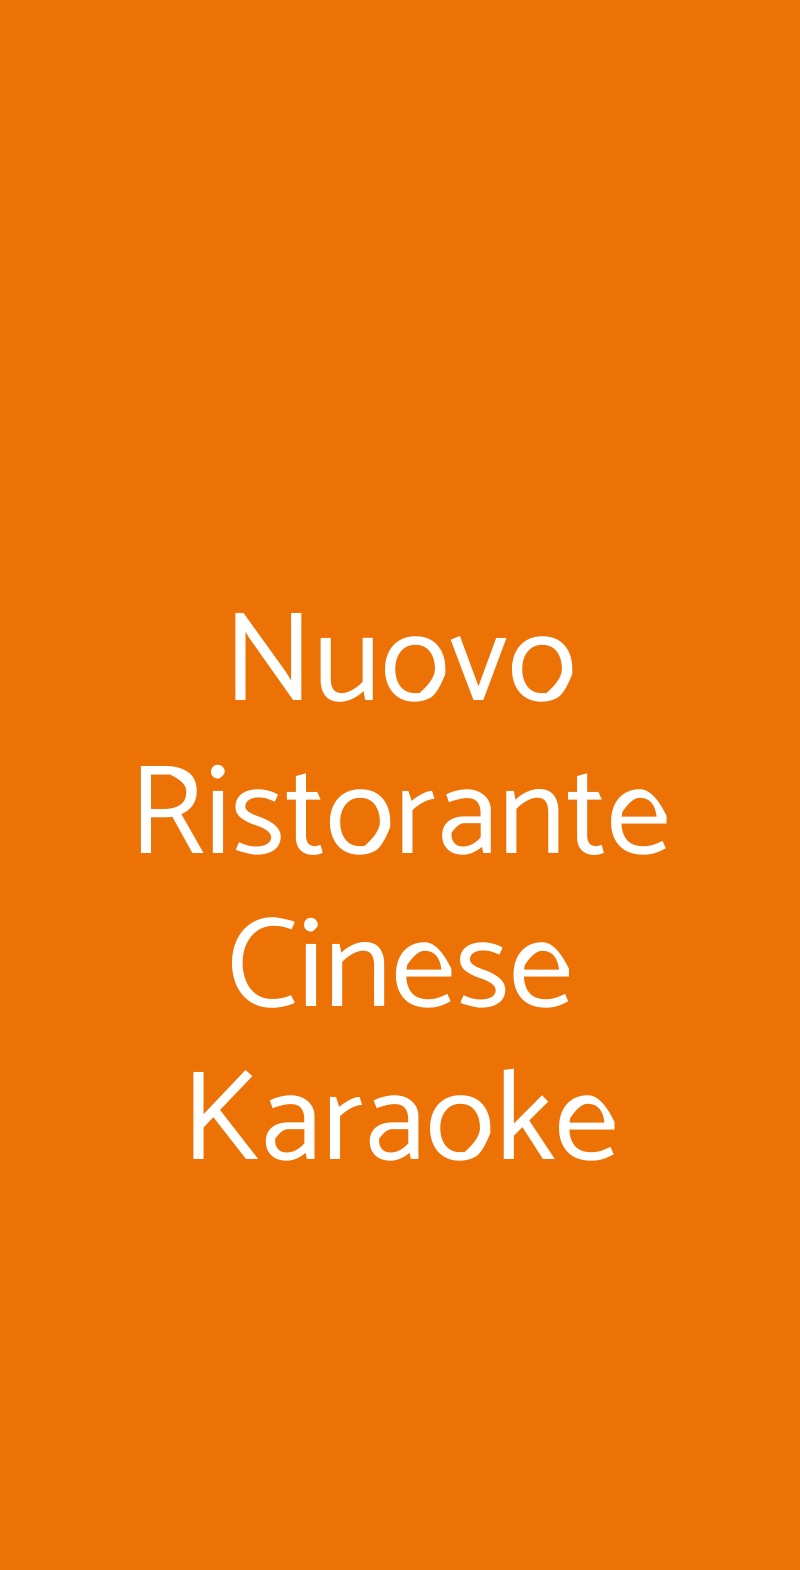 Nuovo Ristorante Cinese Karaoke Roma menù 1 pagina